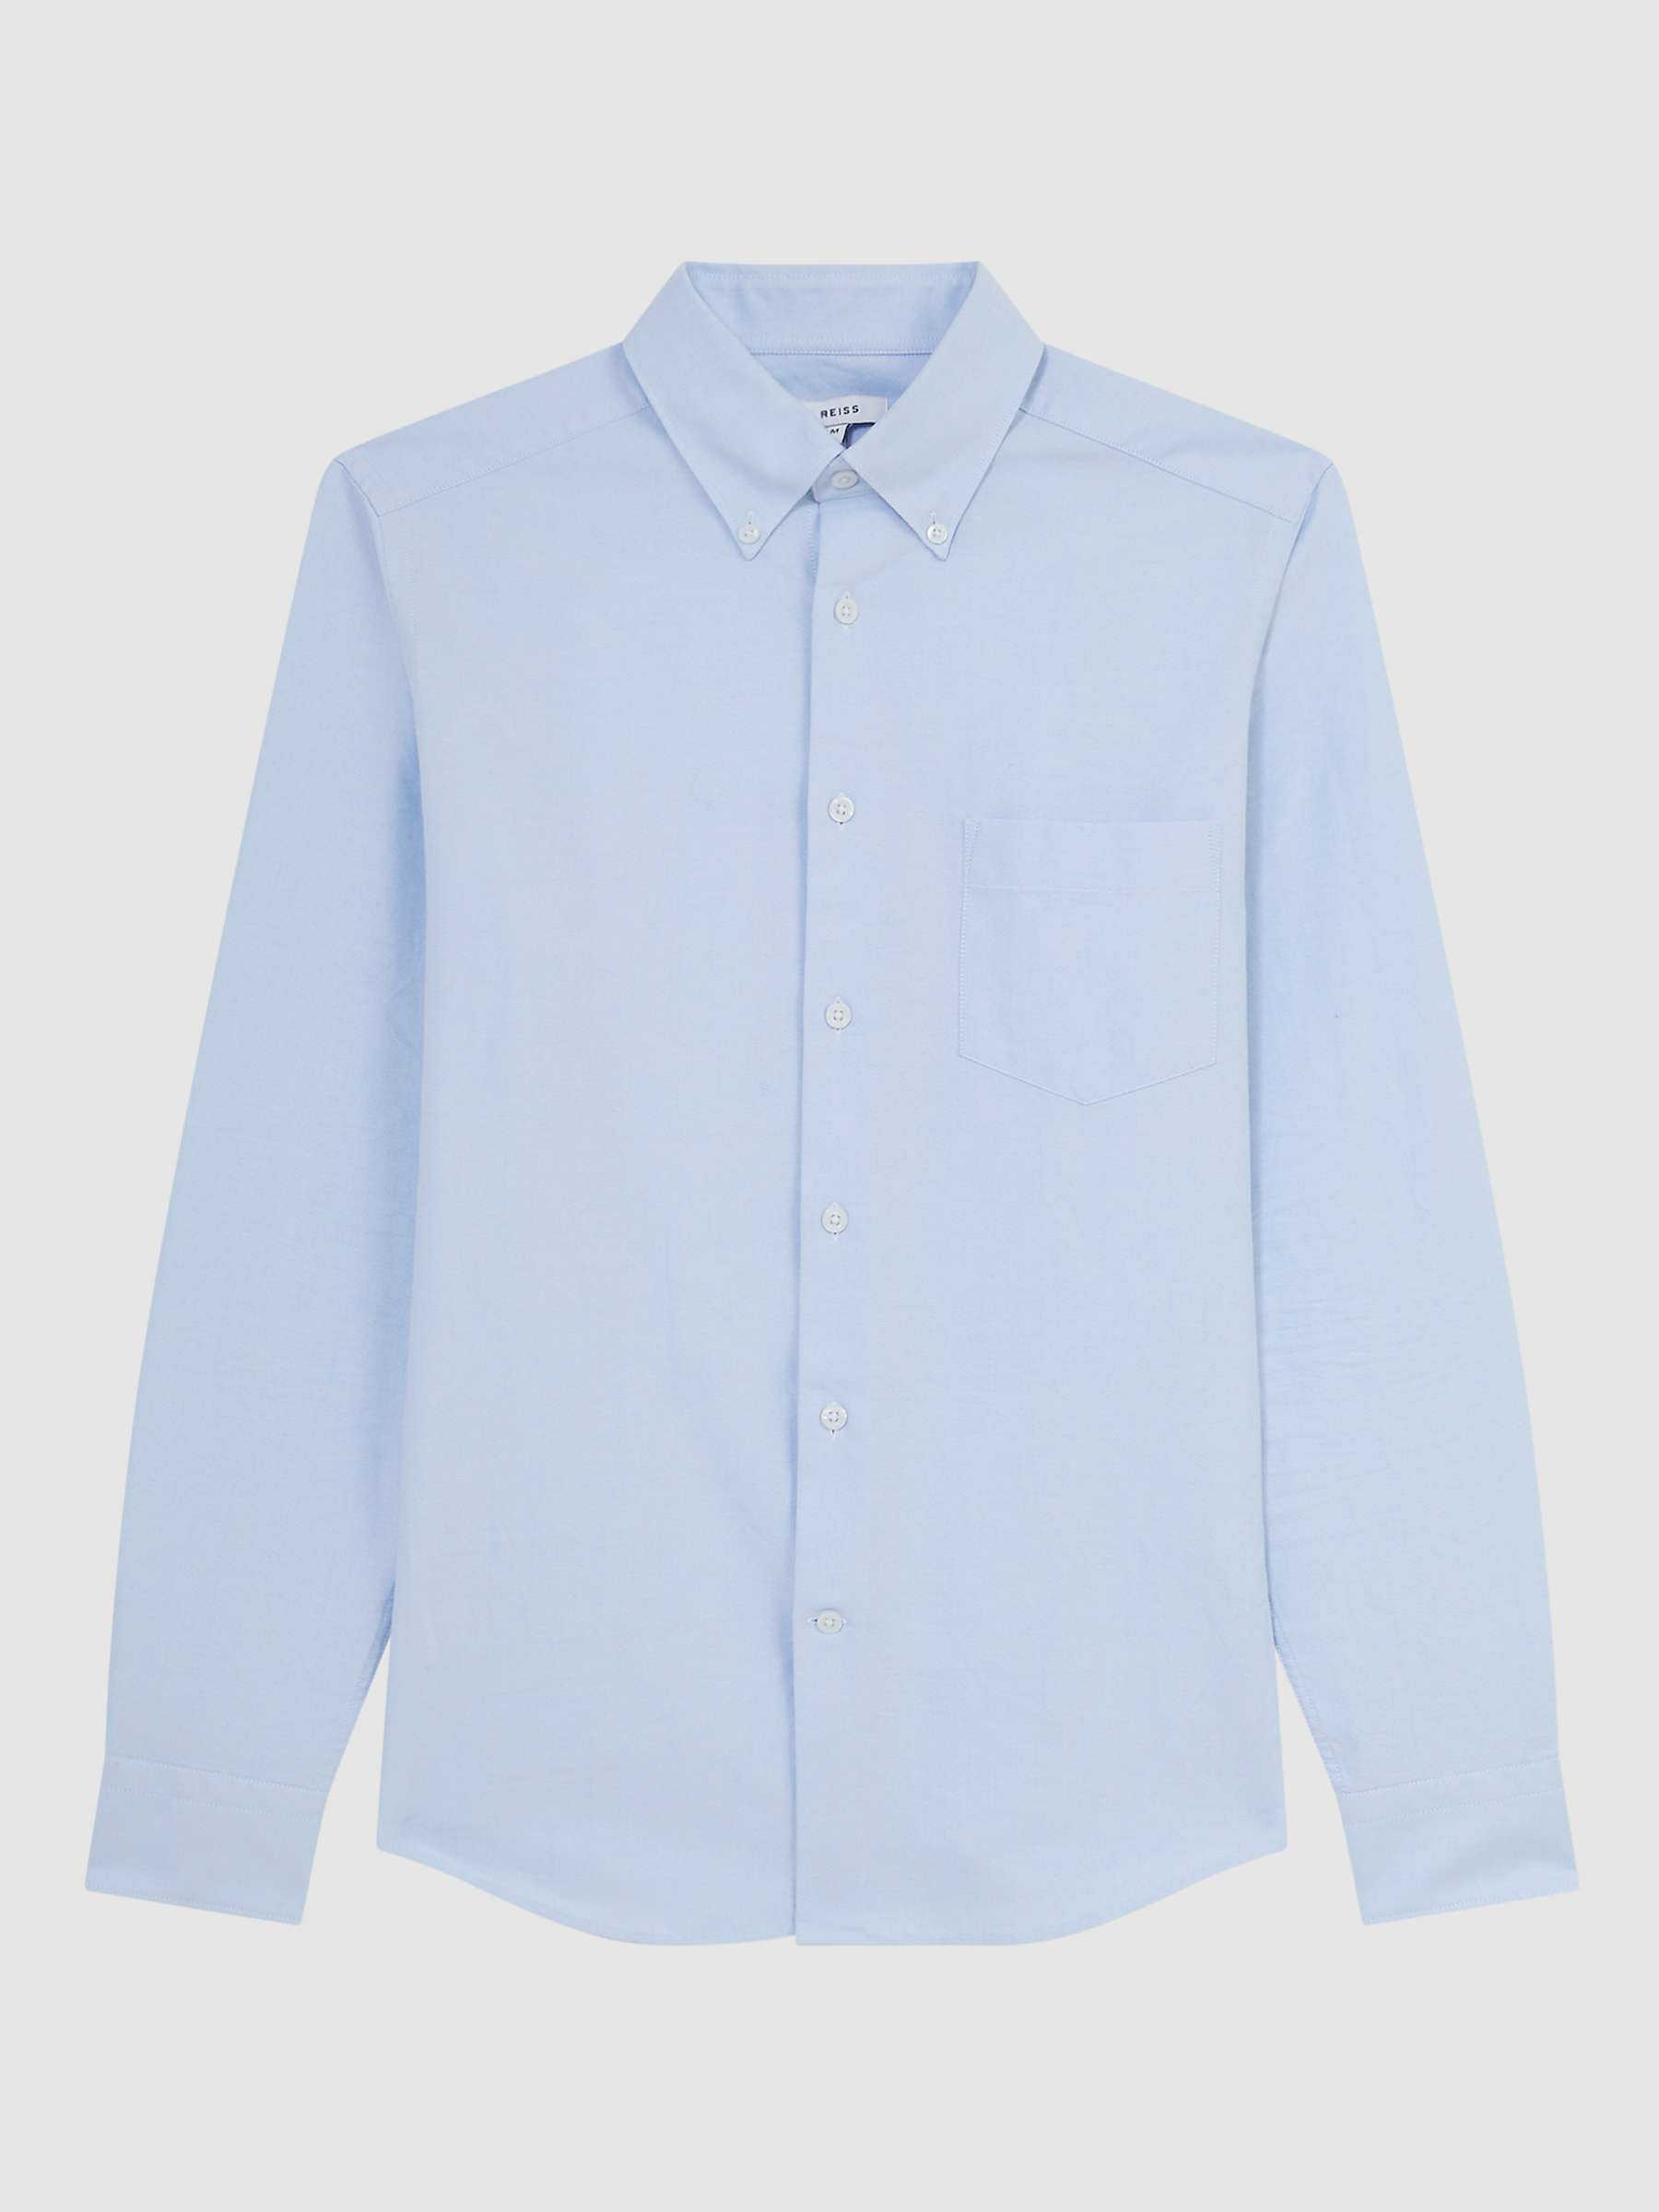 Reiss Greenwich Long Sleeved Shirt, Soft Blue at John Lewis & Partners